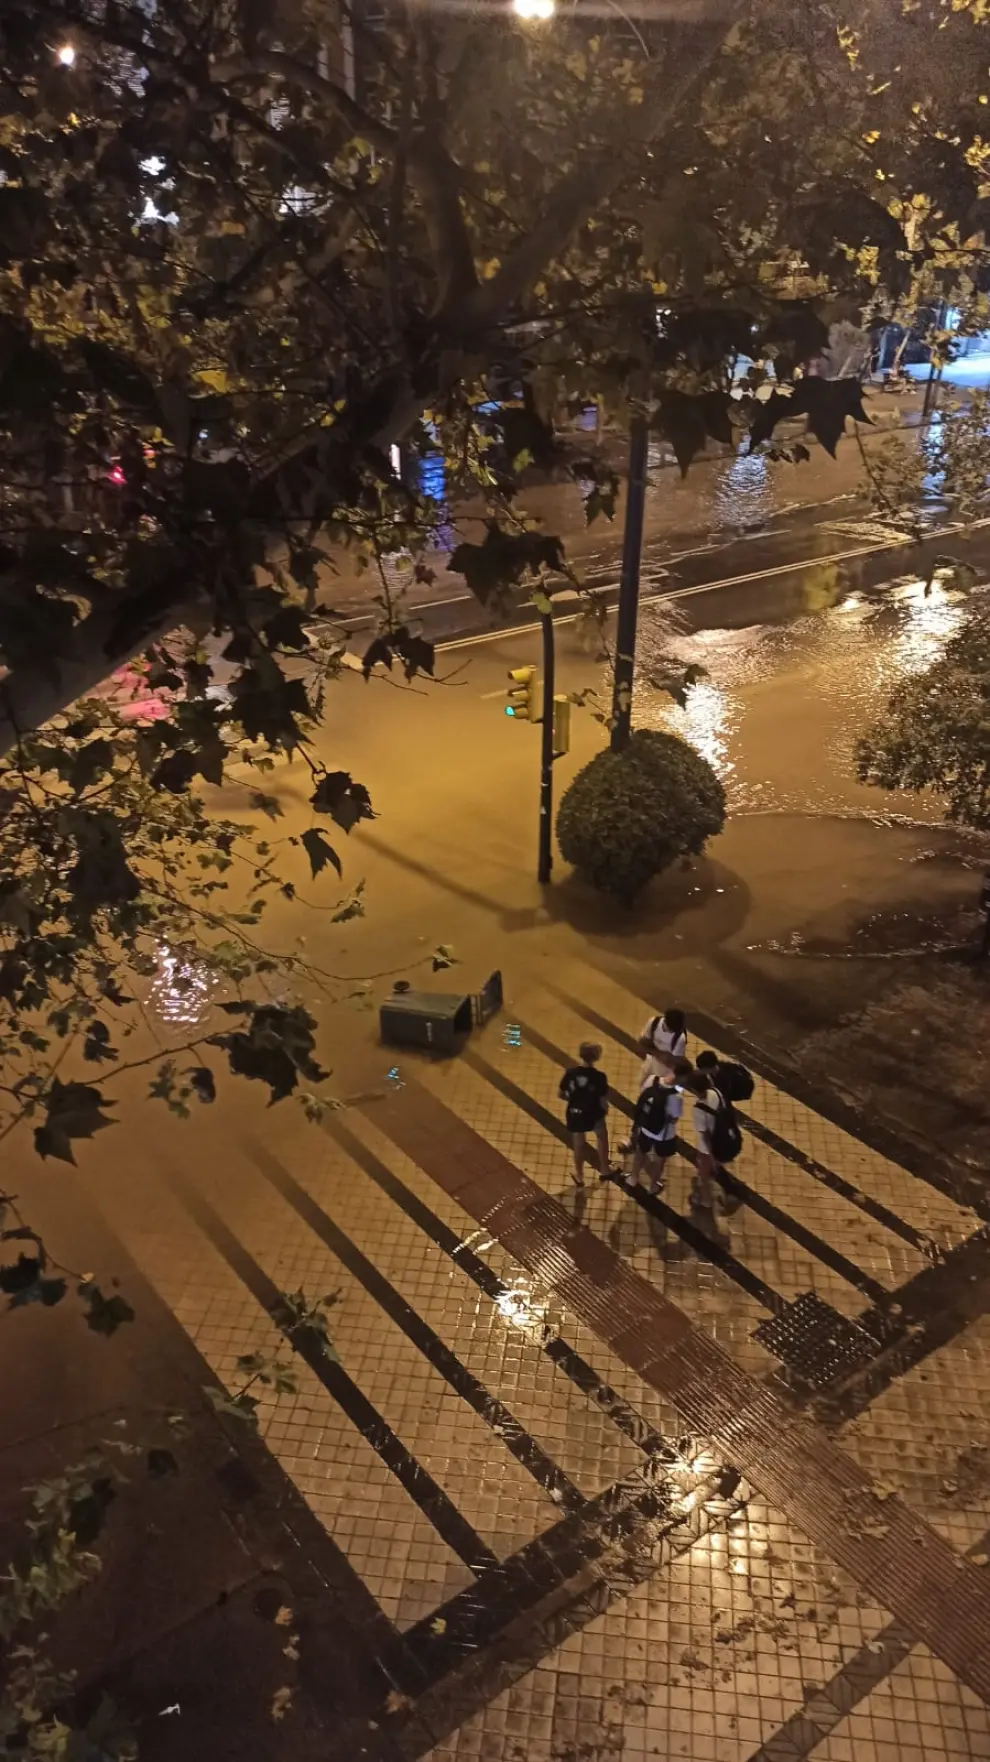 El reventón de una tubería ha inundado este viernes por la noche el paseo de Pamplona y la calle de Hernán Cortés.